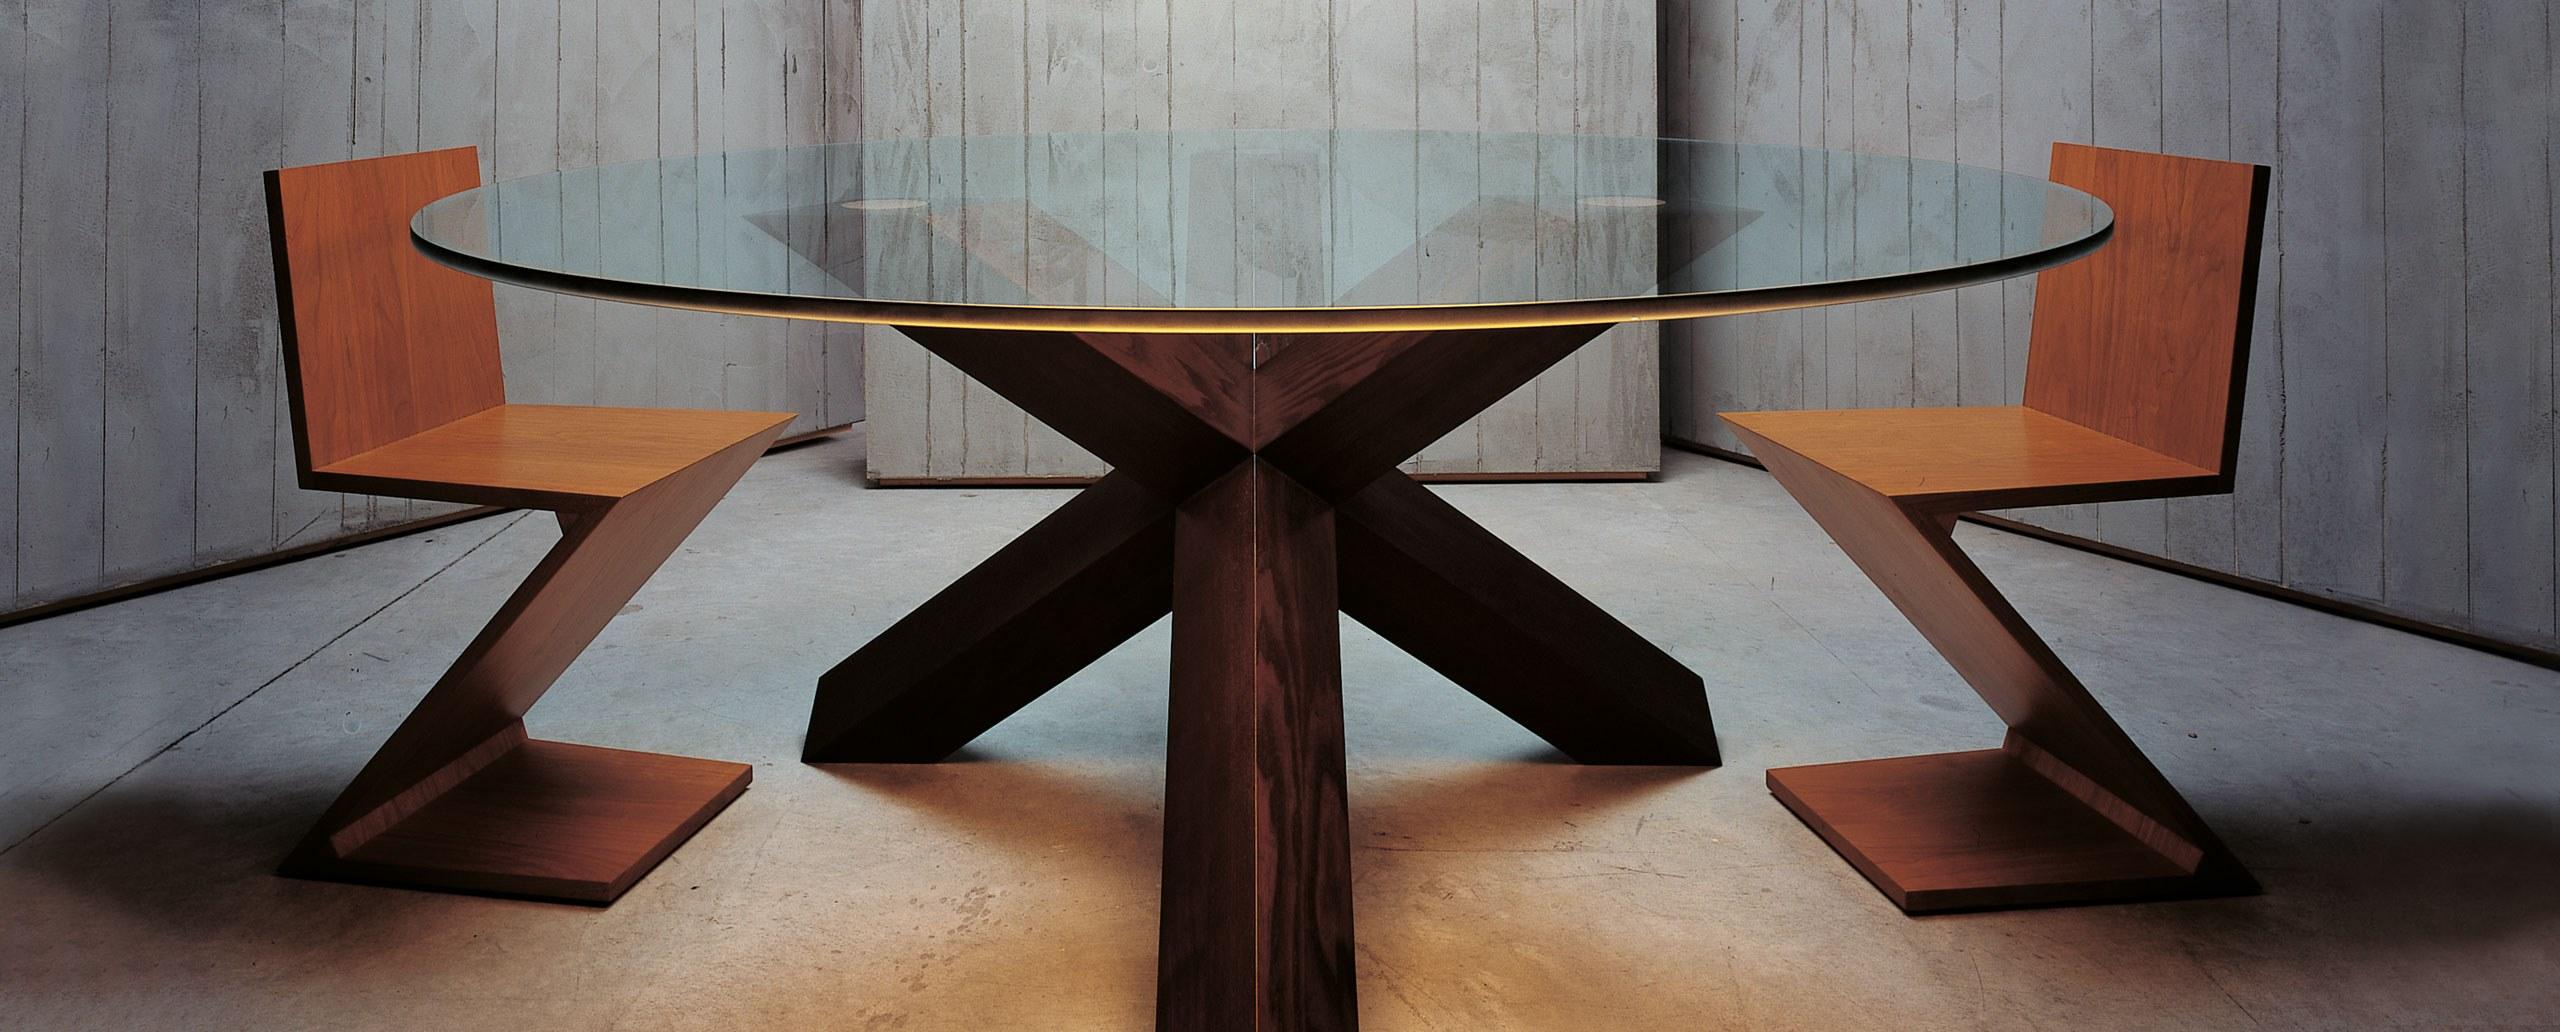 Wood Mario Bellini La Rotonda Table by Cassina For Sale